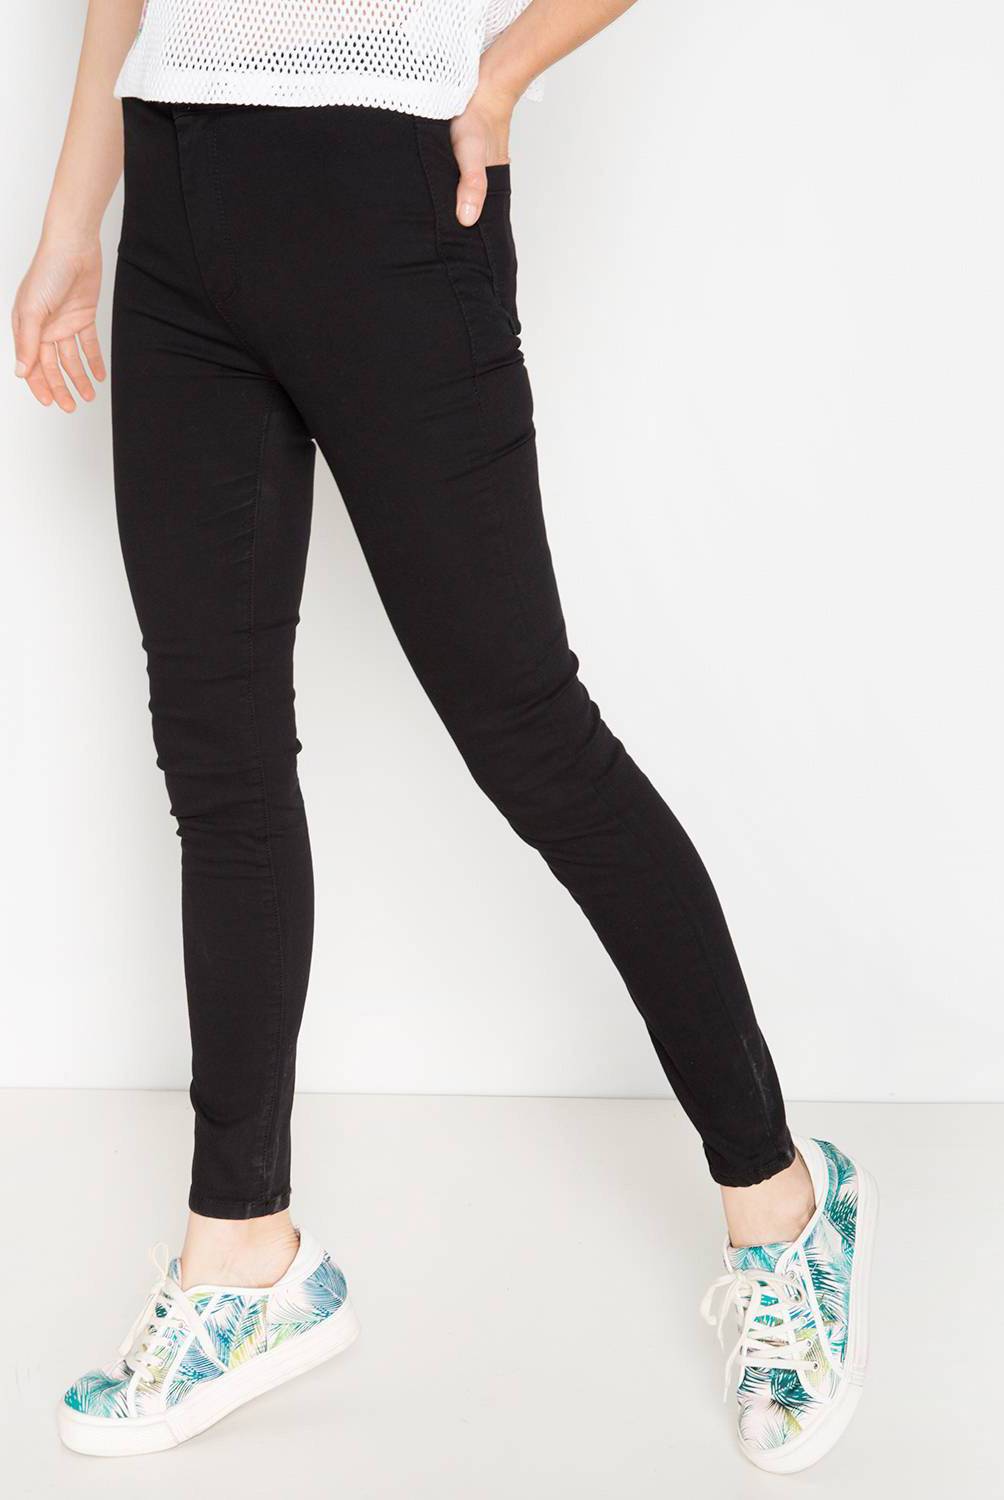 SYBILLA - Jeans Skinny Kate Tiro Alto Mujer Sybilla